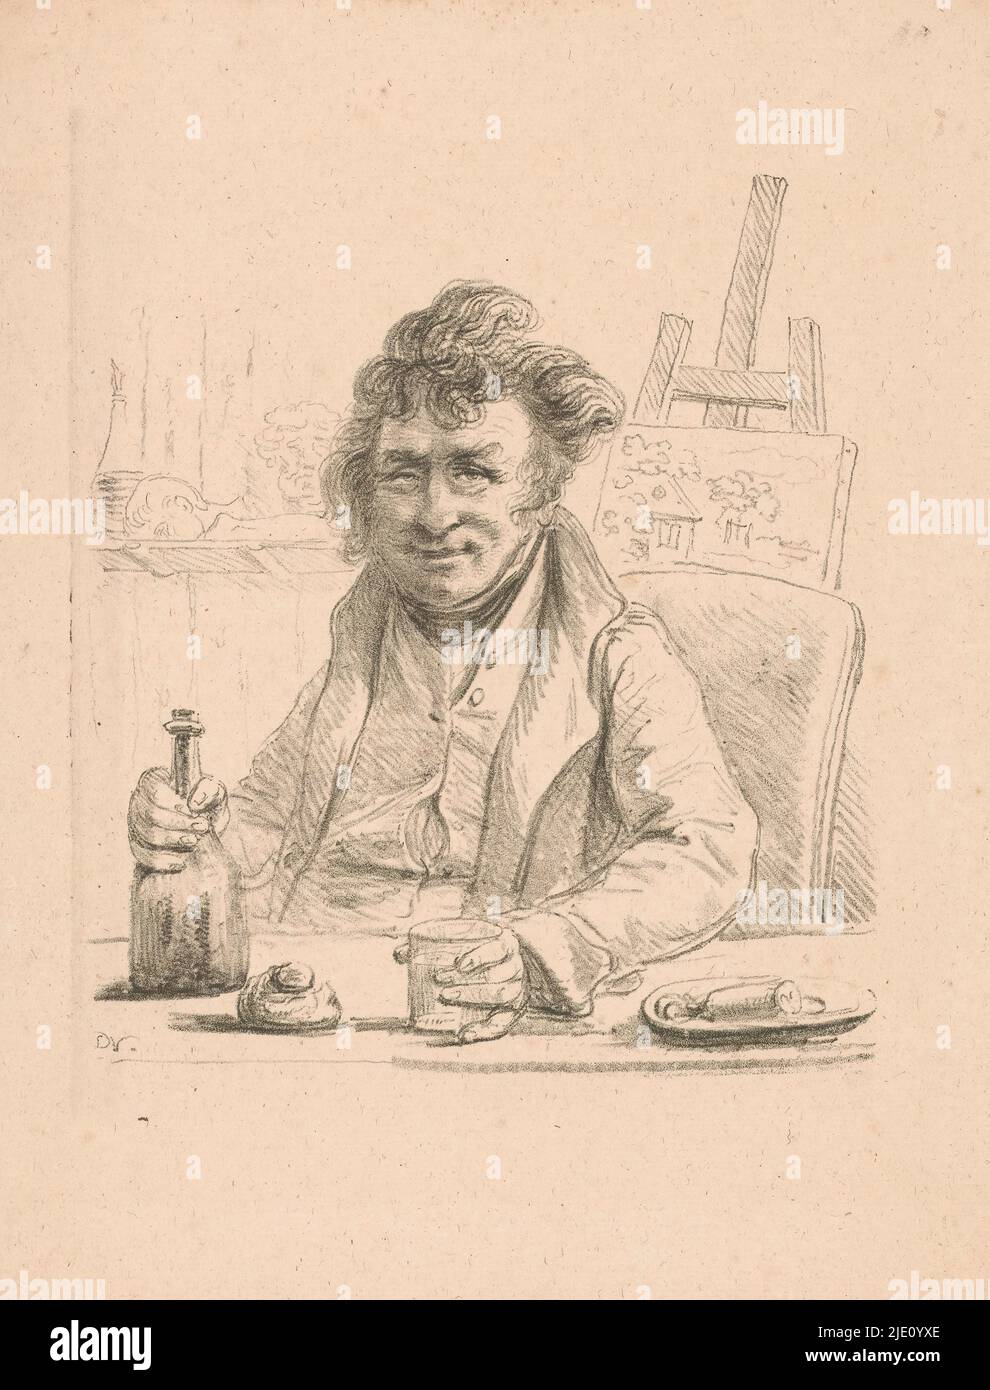 Porträt des Schauspielers Jolly in der Rolle des Künstlers Lantara, der Schauspieler Adrien Jean Baptiste Mussat, genannt Jolly, in der Rolle des Bohemian und Künstler Lantara. Er sitzt an einem Tisch, umklammert mit der linken Hand ein Glas und mit der rechten eine Flasche. Im Hintergrund eine Staffelei, die eine Landschaft darstellt., Druckerei: Dominique Vivant Denon (Baron), (auf Objekt erwähnt), Paris, c. 1810 - c. 1825, Papier, Höhe 337 mm × Breite 245 mm Stockfoto